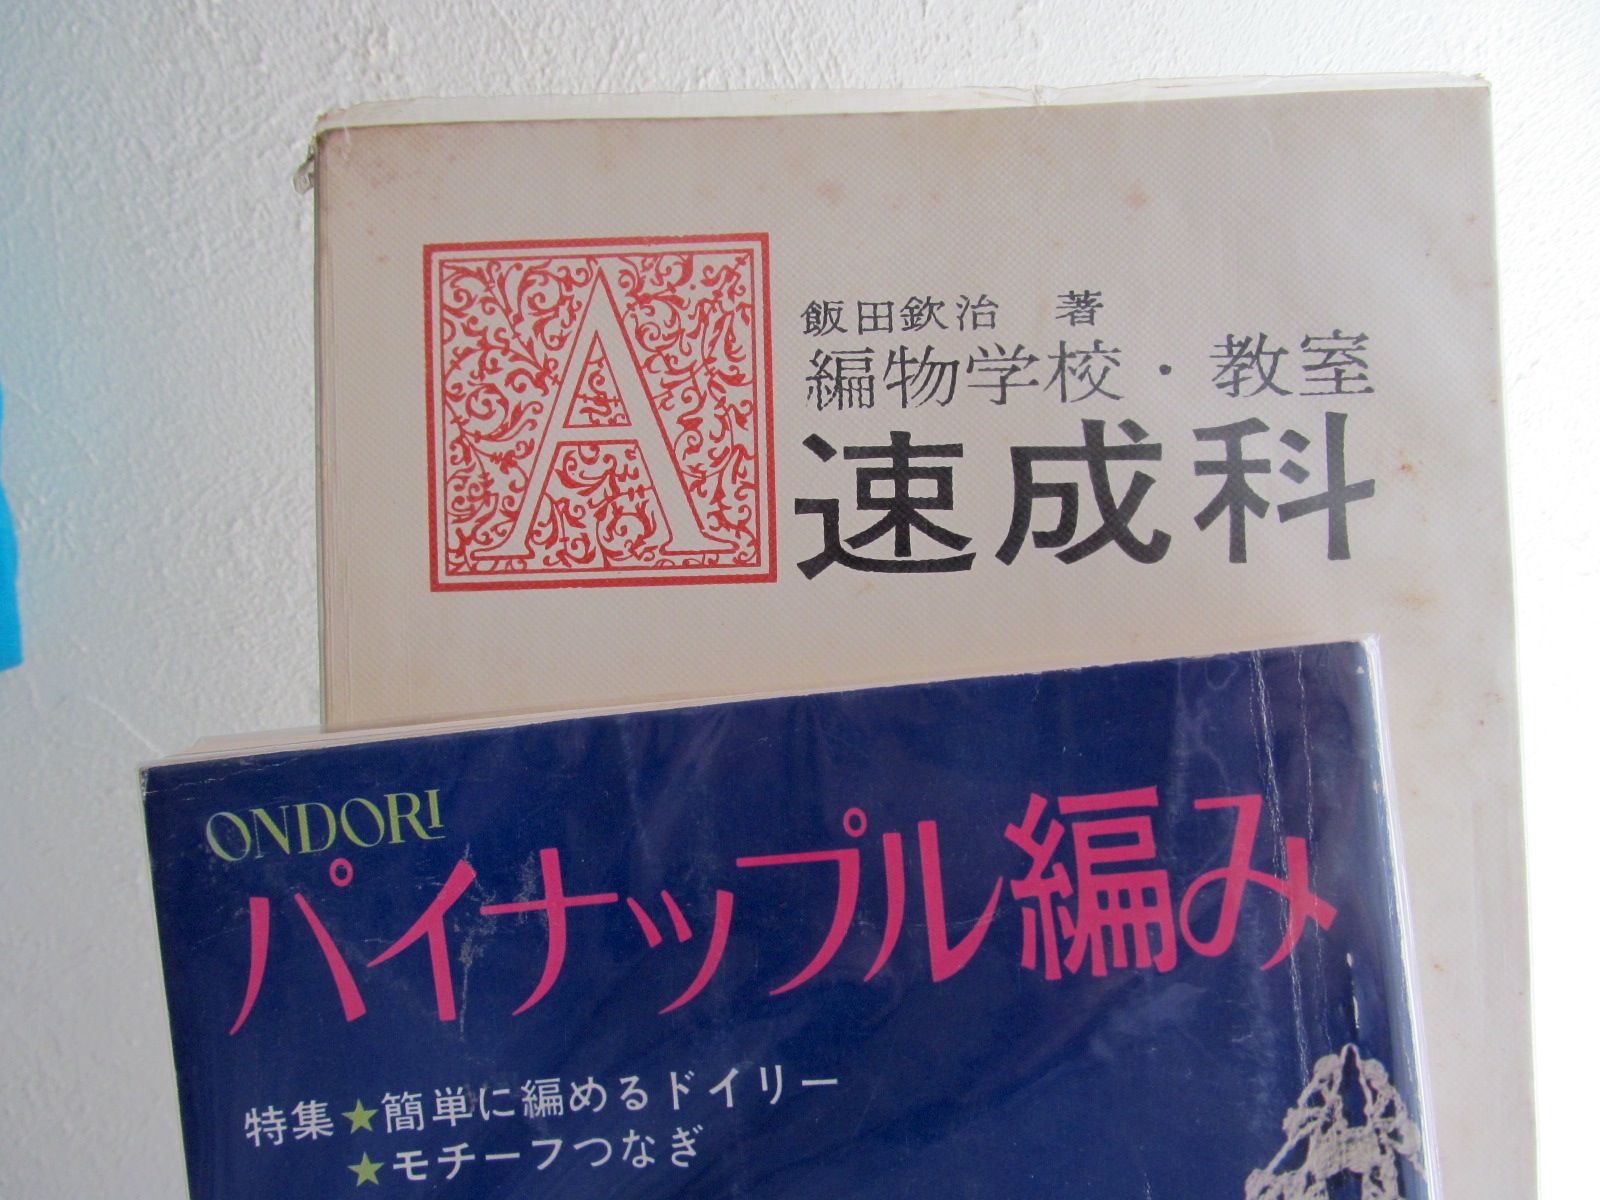 マヤルカ古書店さんの本、むかしの本もちらほらあっておもしろいなあ〜_f0129557_10335247.jpg